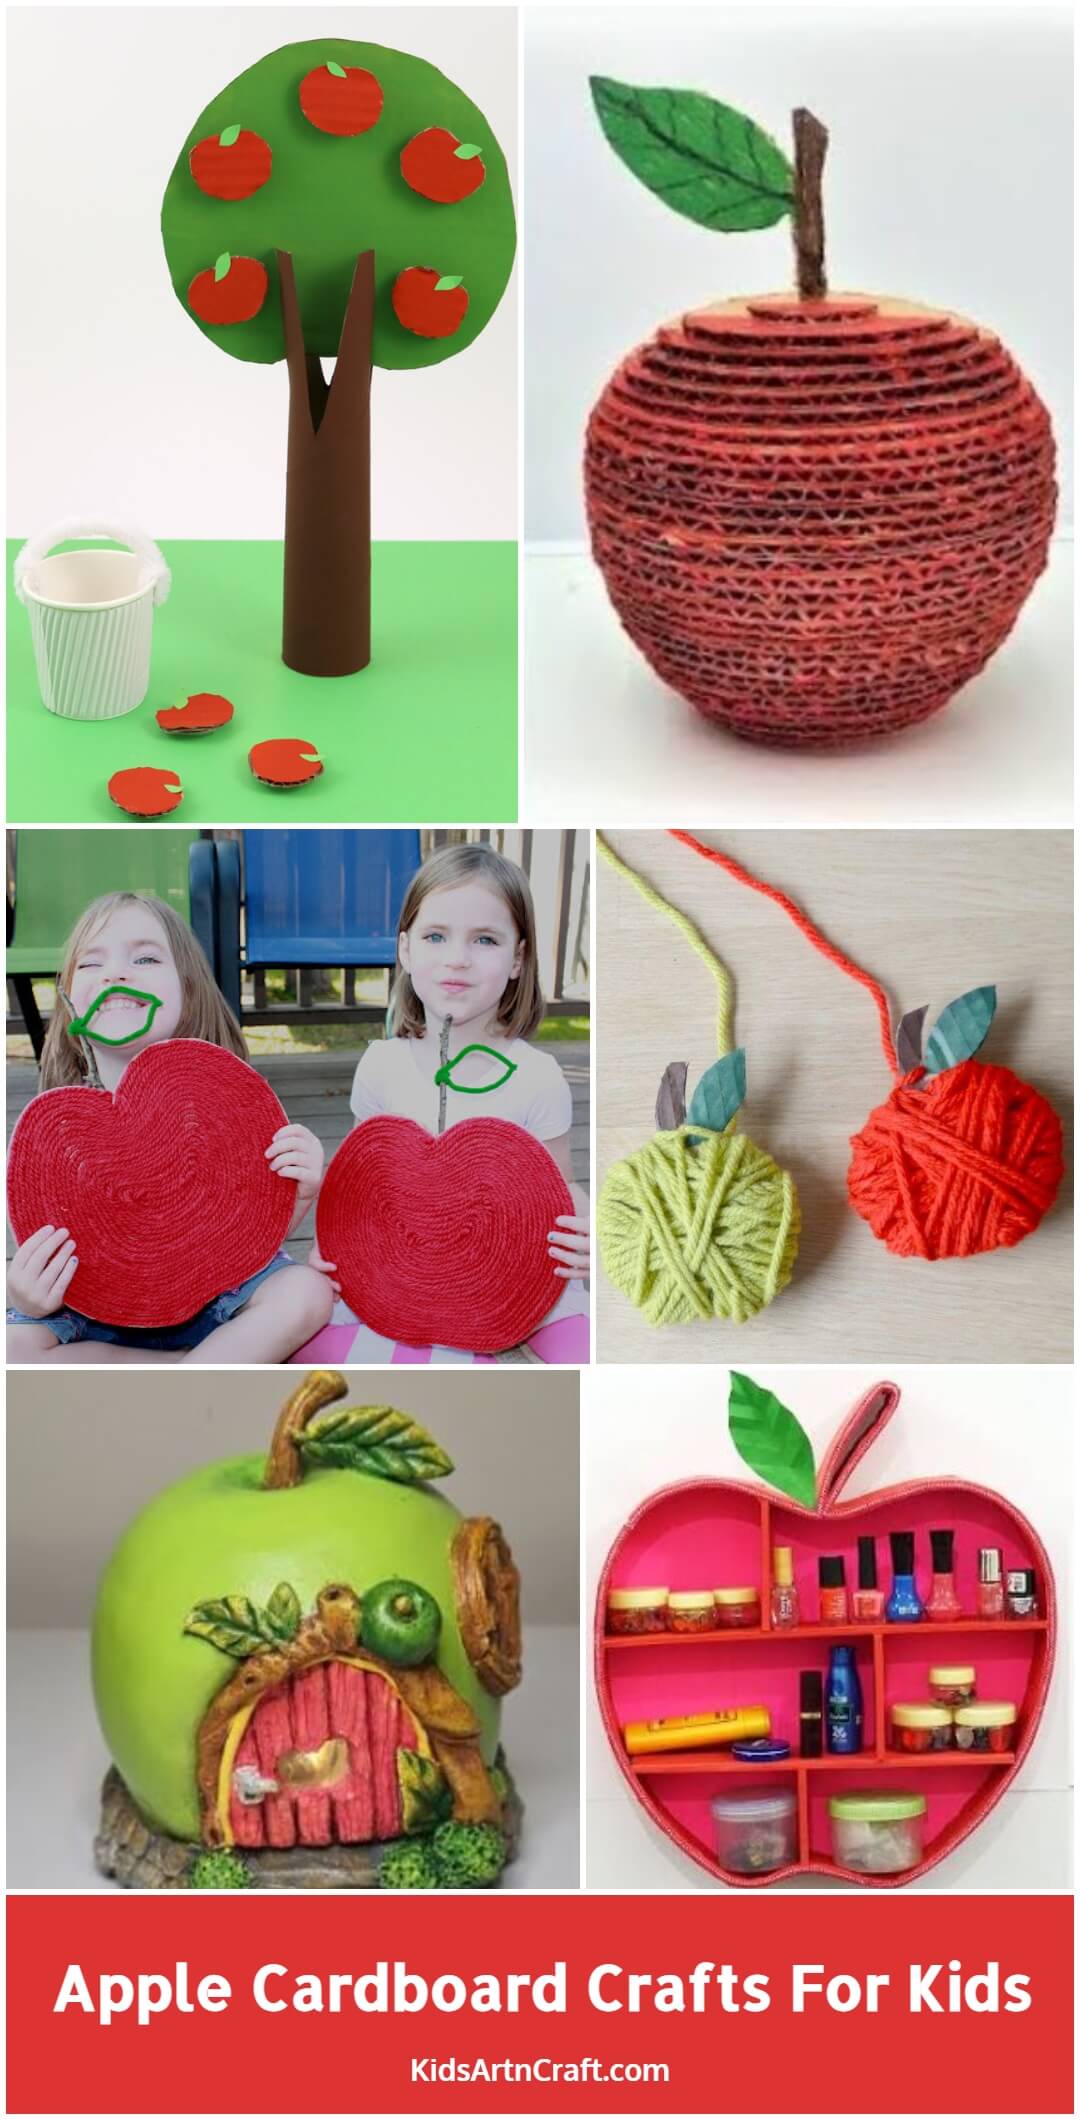 Apple Cardboard Crafts For Kids